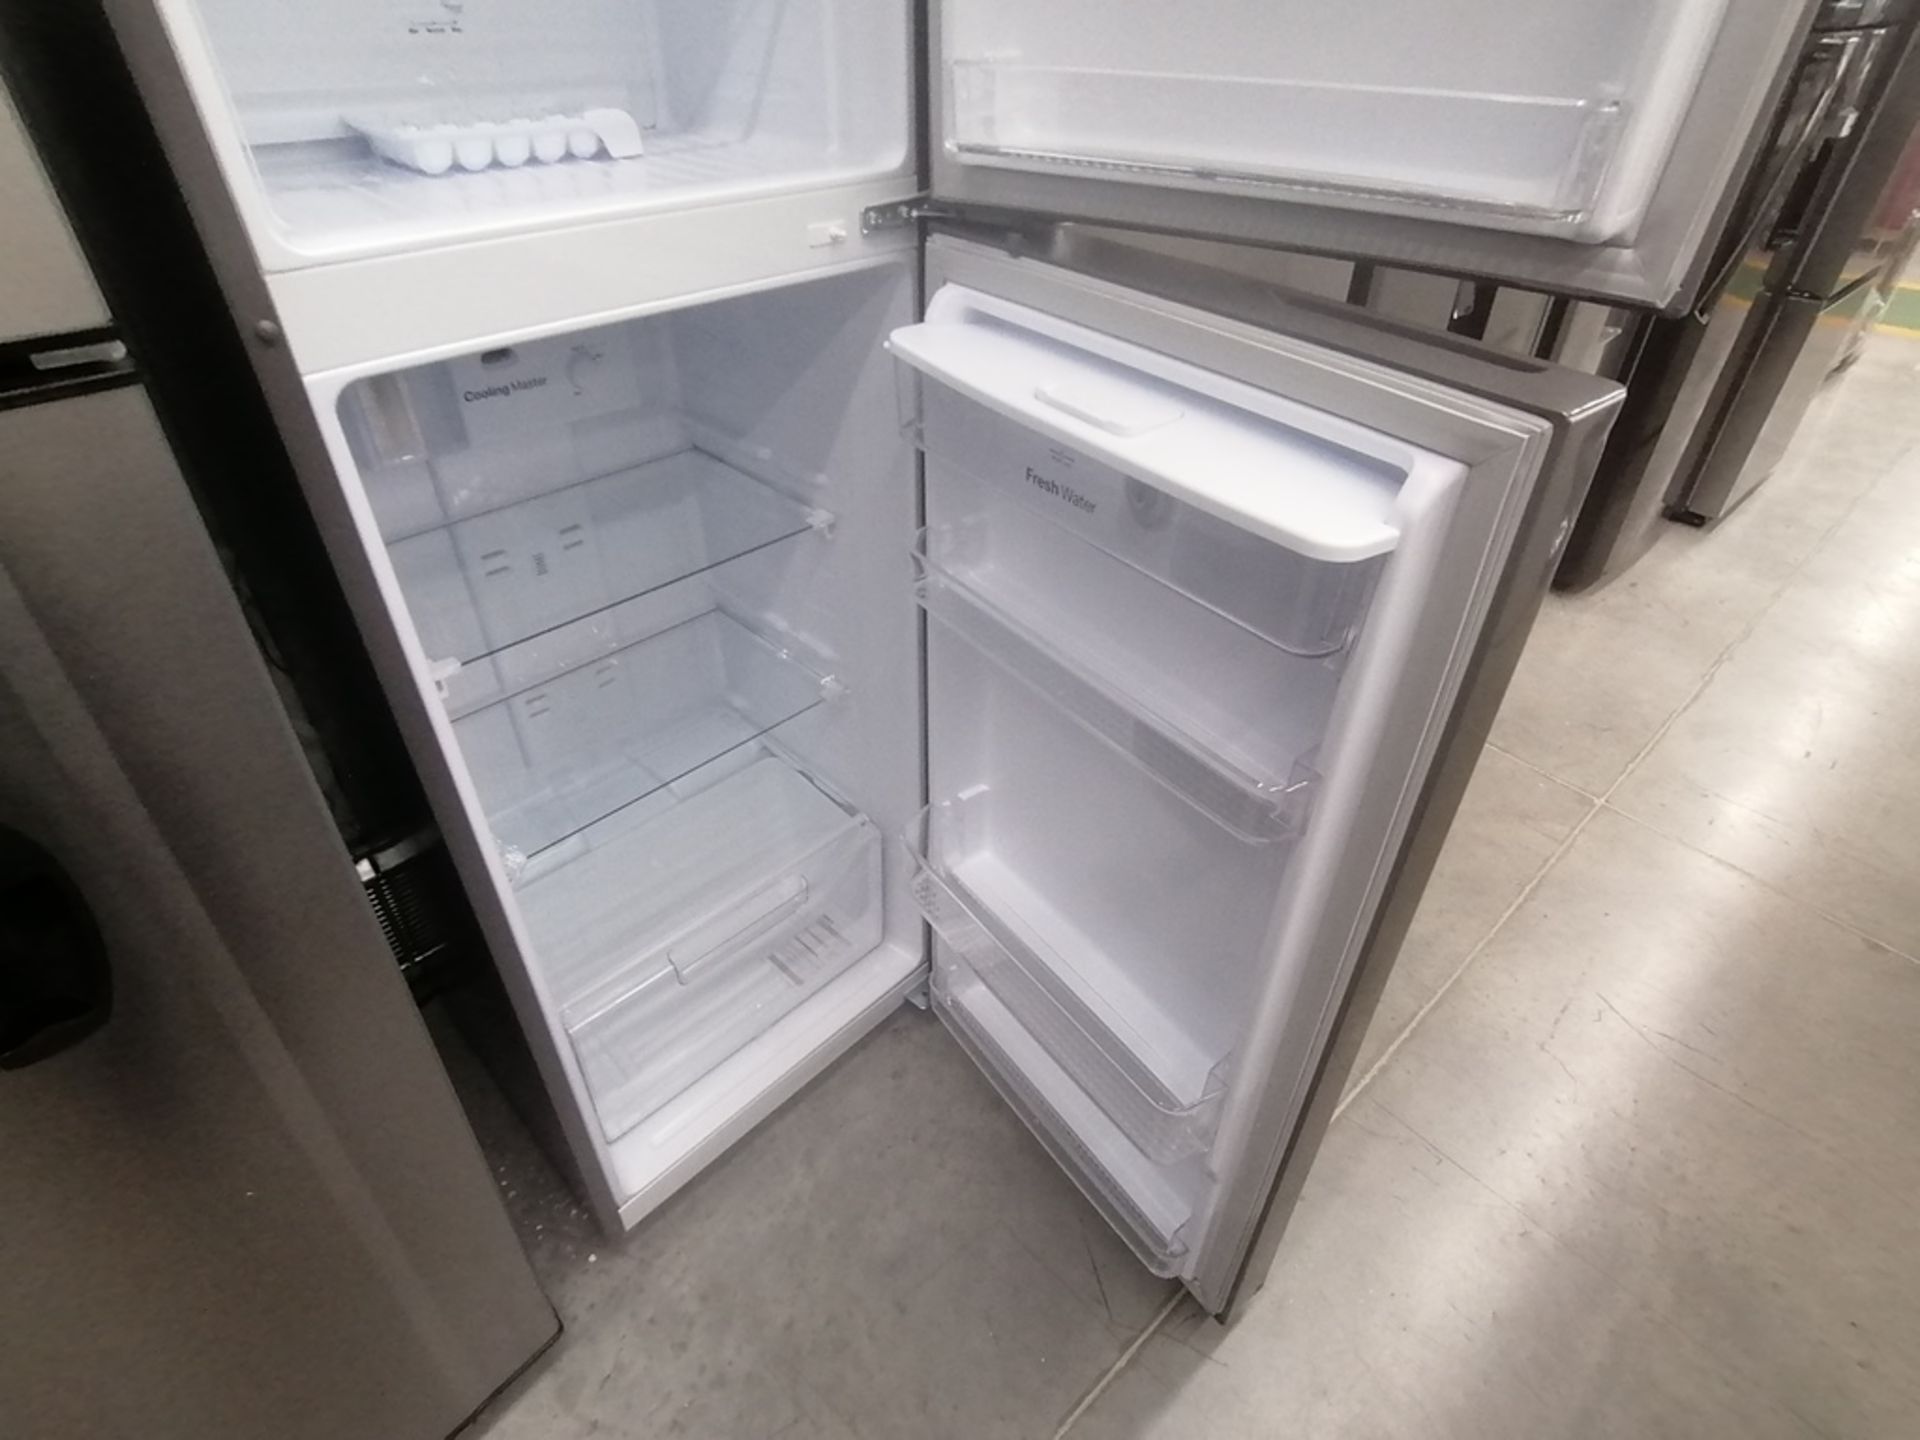 Lote de 2 refrigeradores incluye: 1 Refrigerador con dispensador de agua, Marca Winia, Modelo DFR32 - Image 14 of 15